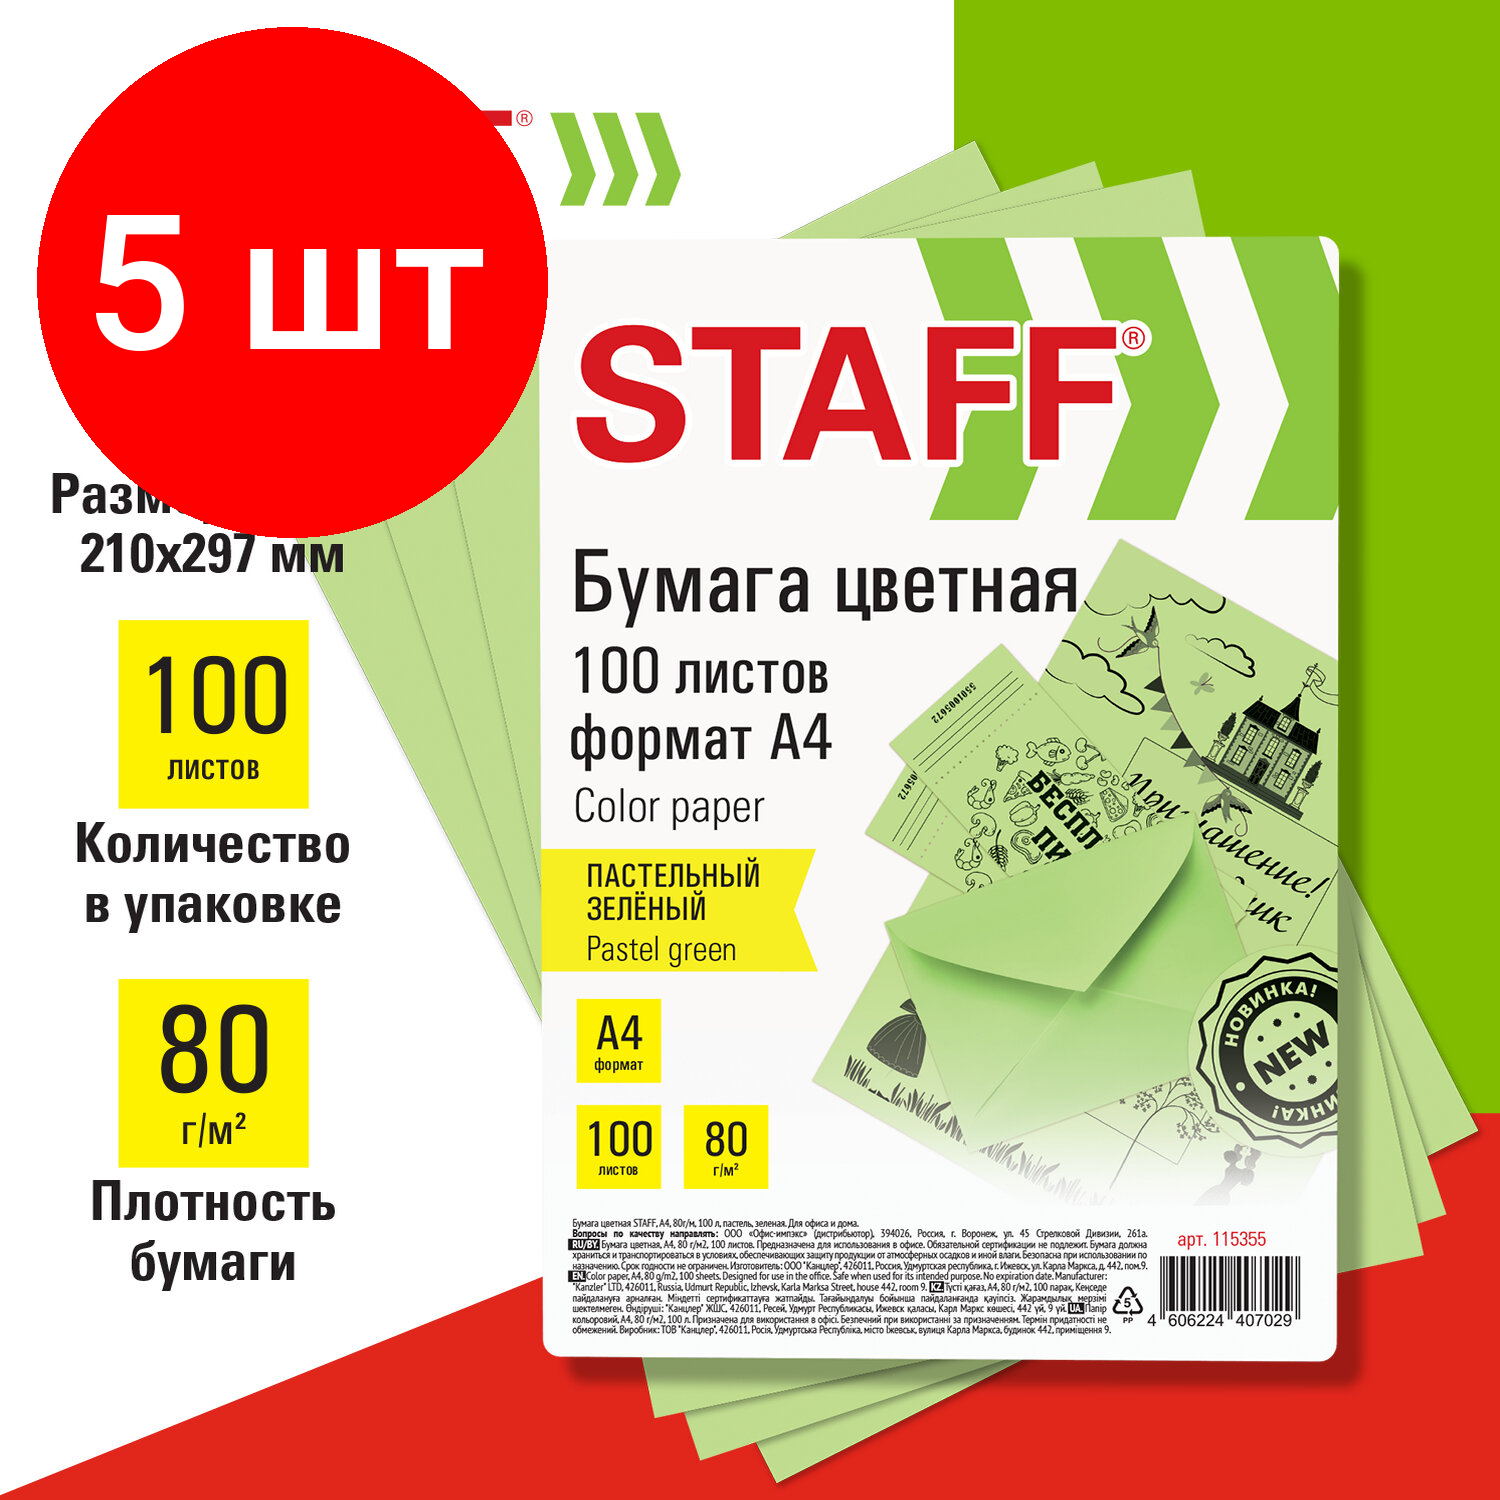 Комплект 5 шт, Бумага цветная STAFF, А4, 80 г/м2, 100 л, пастель, зеленая, для офиса и дома, 115355